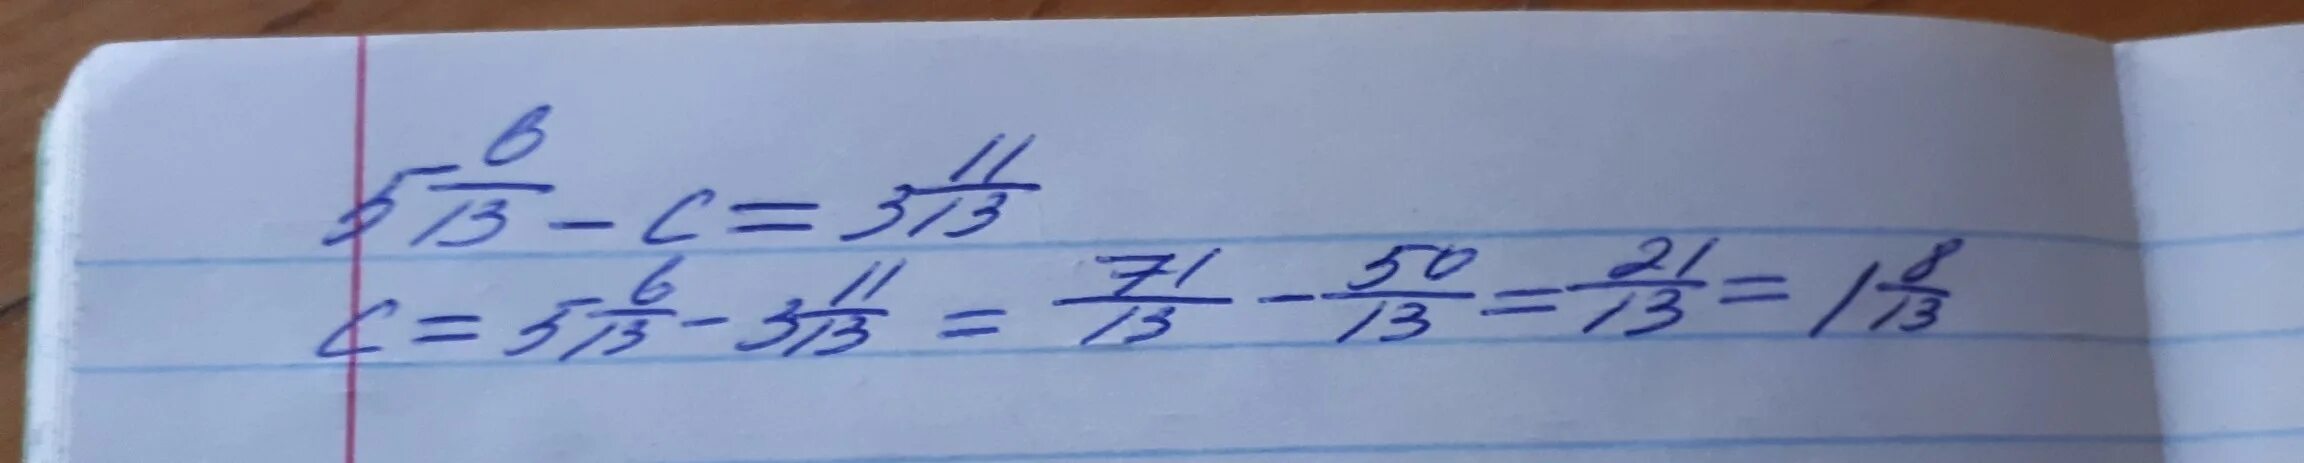 Х 3 15 2 5 ответ. Решить пример 4 целых 5 девятых +(-3 целых 7 пятнадцатых)_(2 целых 3 пятых). Реши уравнение 6 целых минус 3 целых 4/9. 4 Целых 11/13 минус 3 целых равно. 28 / 2 Целые 6 7.